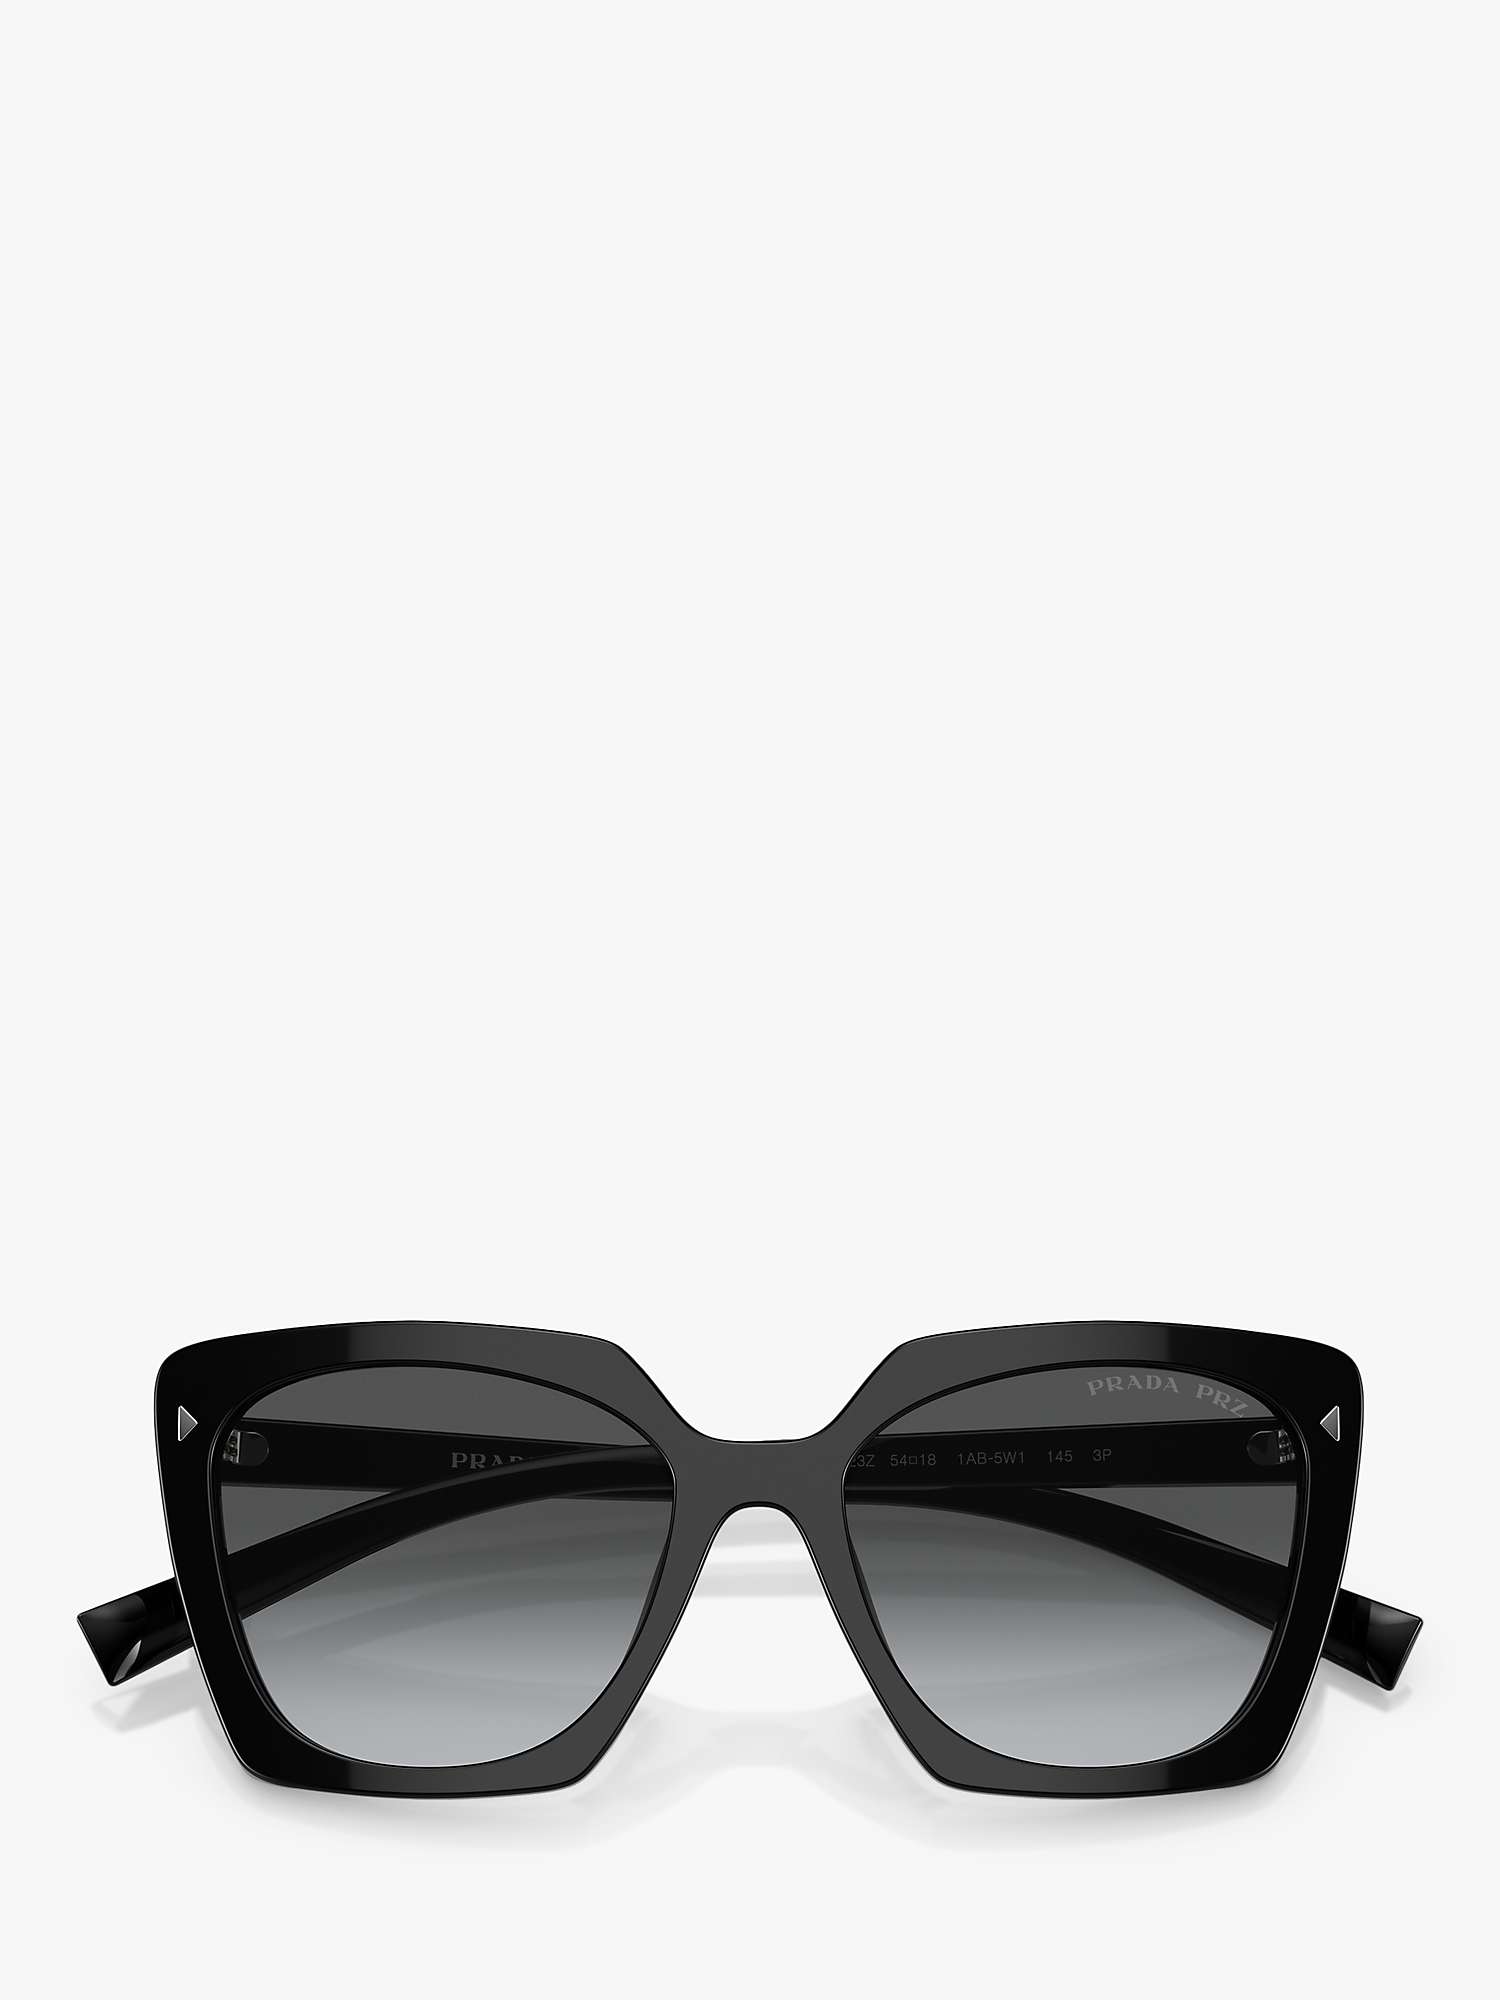 Buy Prada PR 23ZS Women's Polarised Square Sunglasses, Black/Grey Gradient Online at johnlewis.com